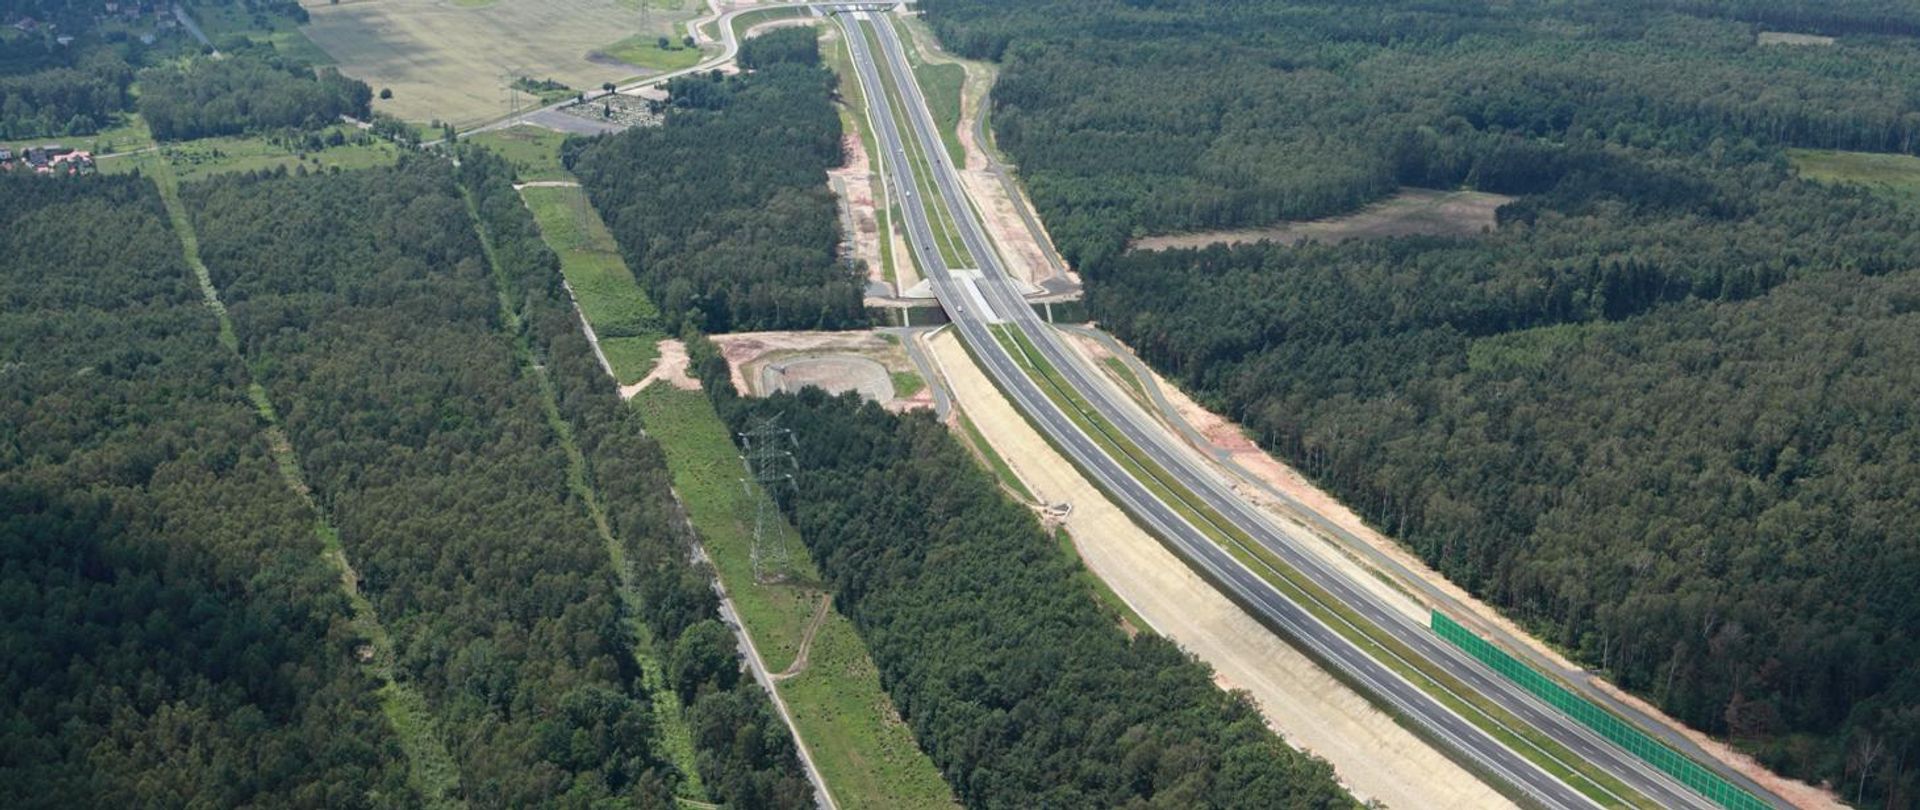 Powstanie ekspertyza i program naprawczy dla autostrady A1 Pyrzowice - Piekary Śląskie